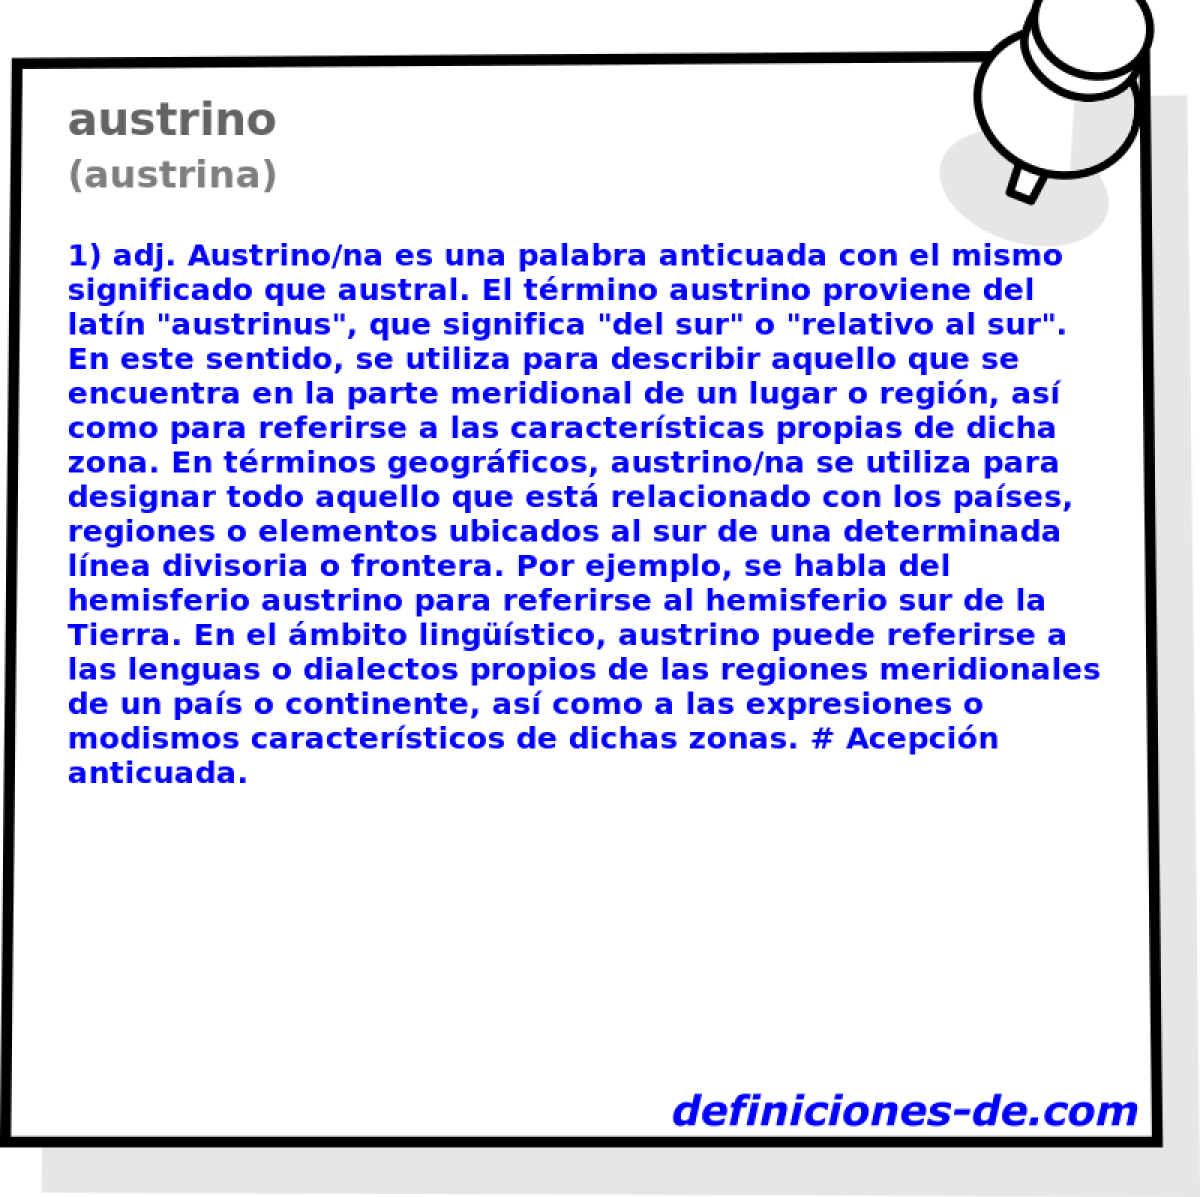 austrino (austrina)